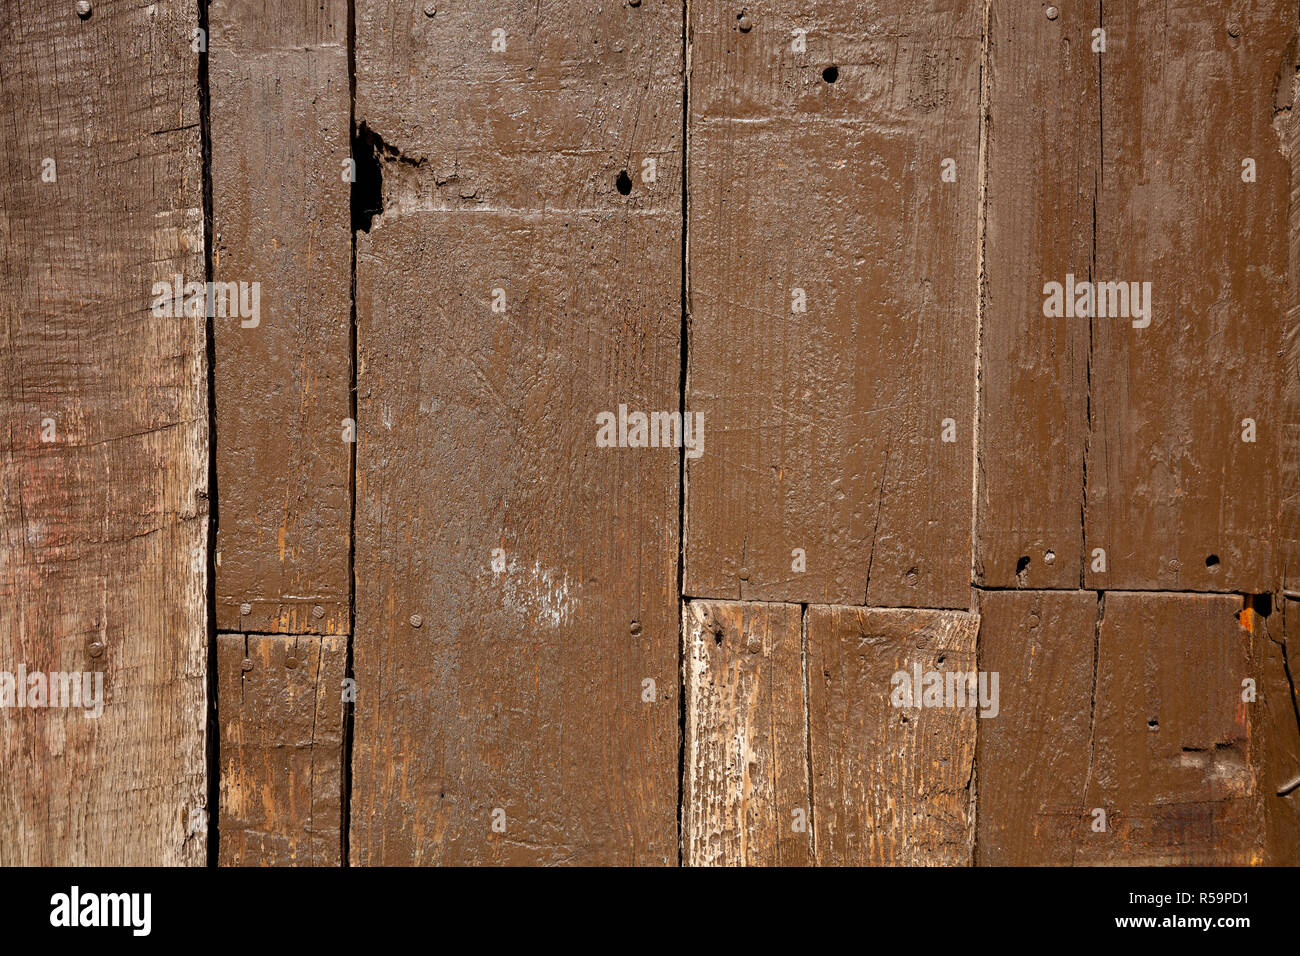 La texture de vieux brown des lamelles en bois. Personnes âgées et détérioré par le passage du temps. Banque D'Images